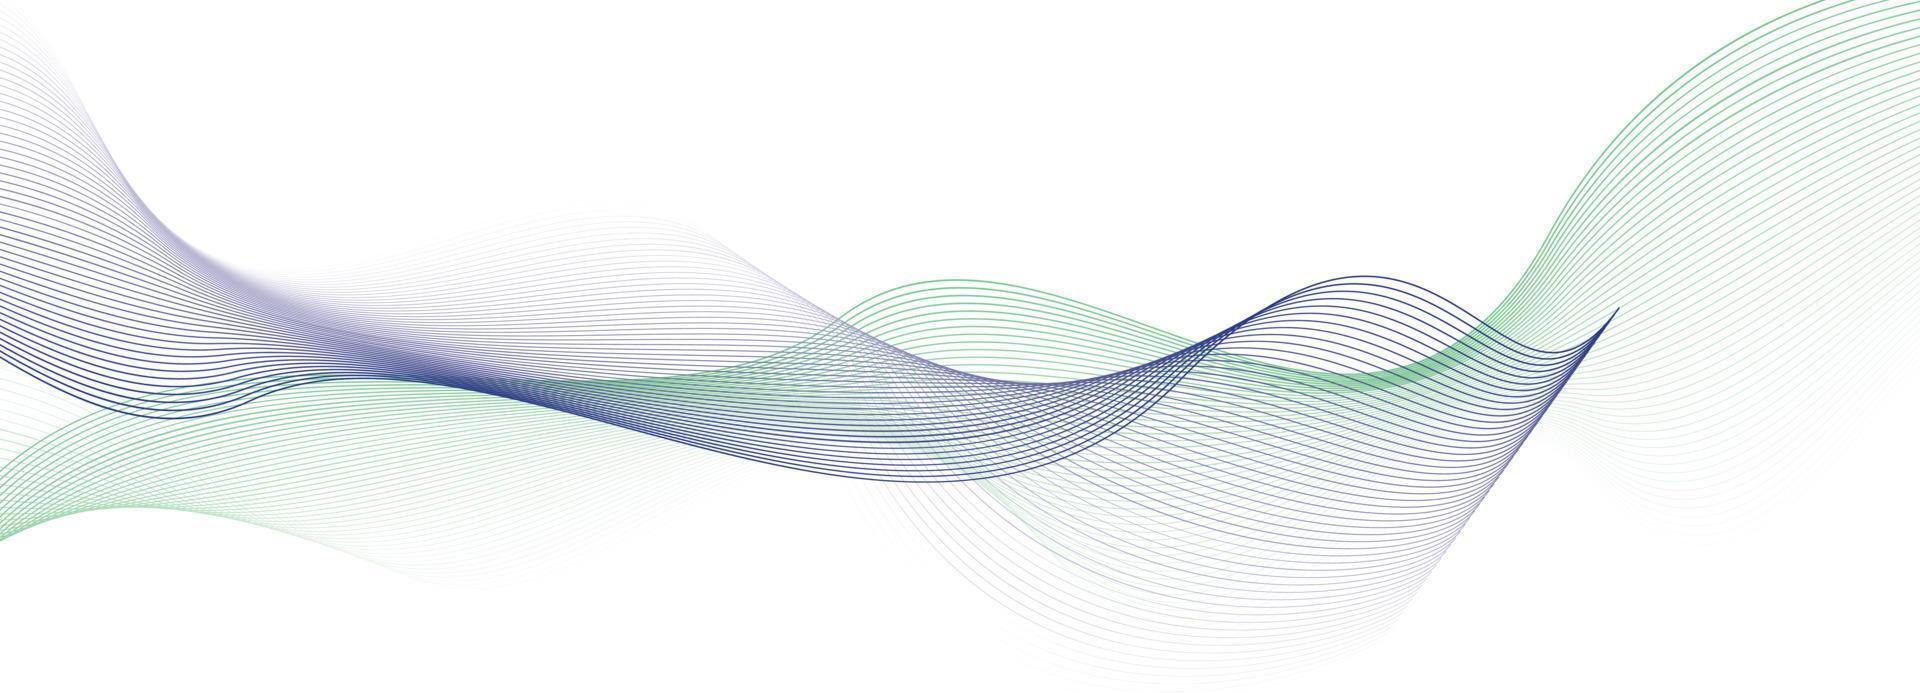 Linienstreifenmuster auf weißem gewelltem Hintergrund. abstrakter moderner Hintergrund futuristische Grafik Energie Schallwellen Technologiekonzeptdesign vektor